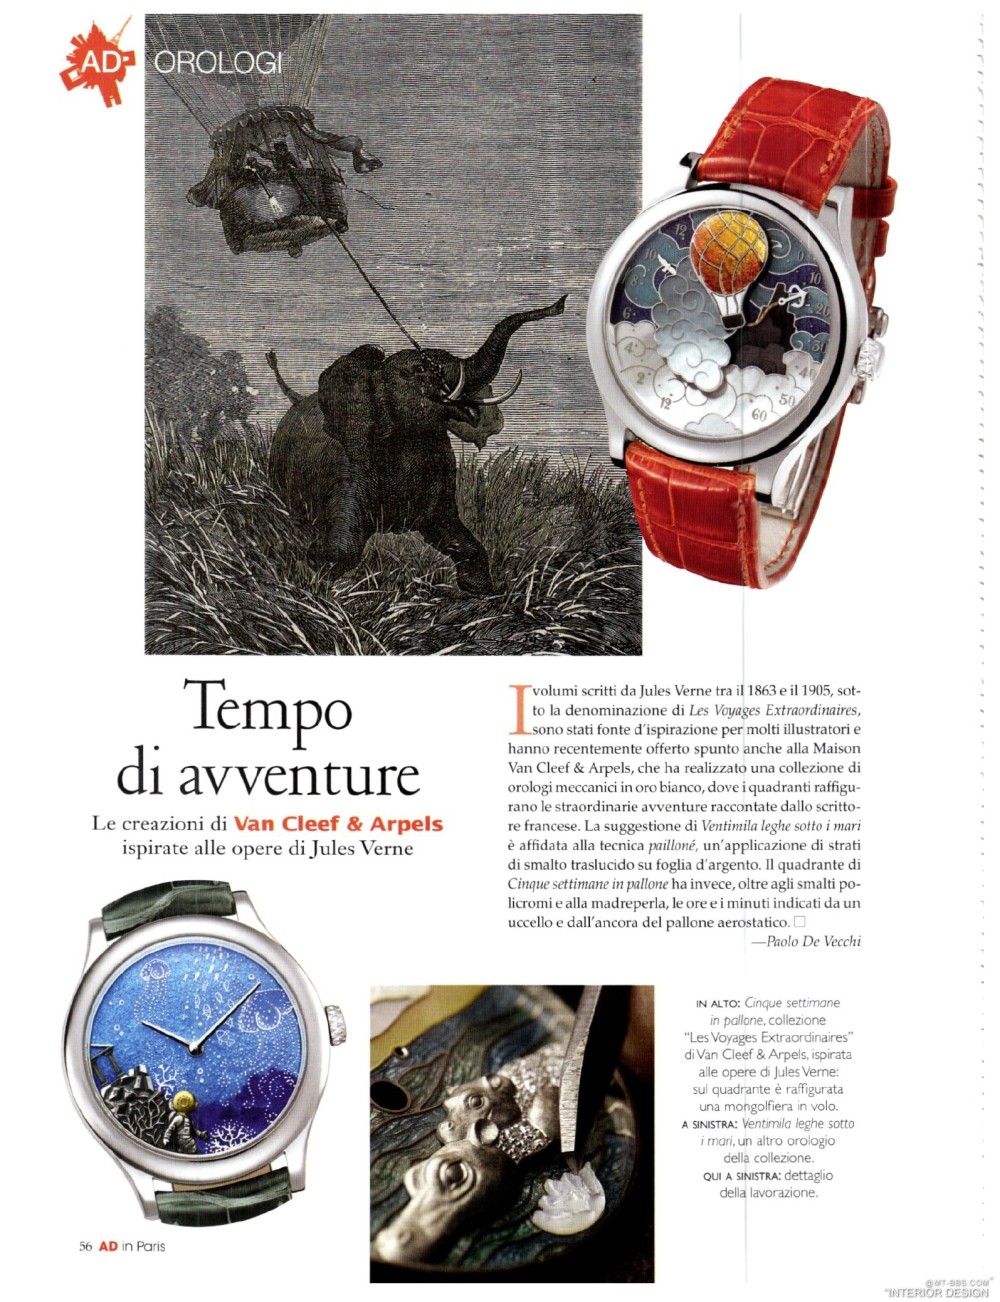 意大利AD 杂志 2012年全年JPG高清版本 全免（上传完毕）_0058.jpg